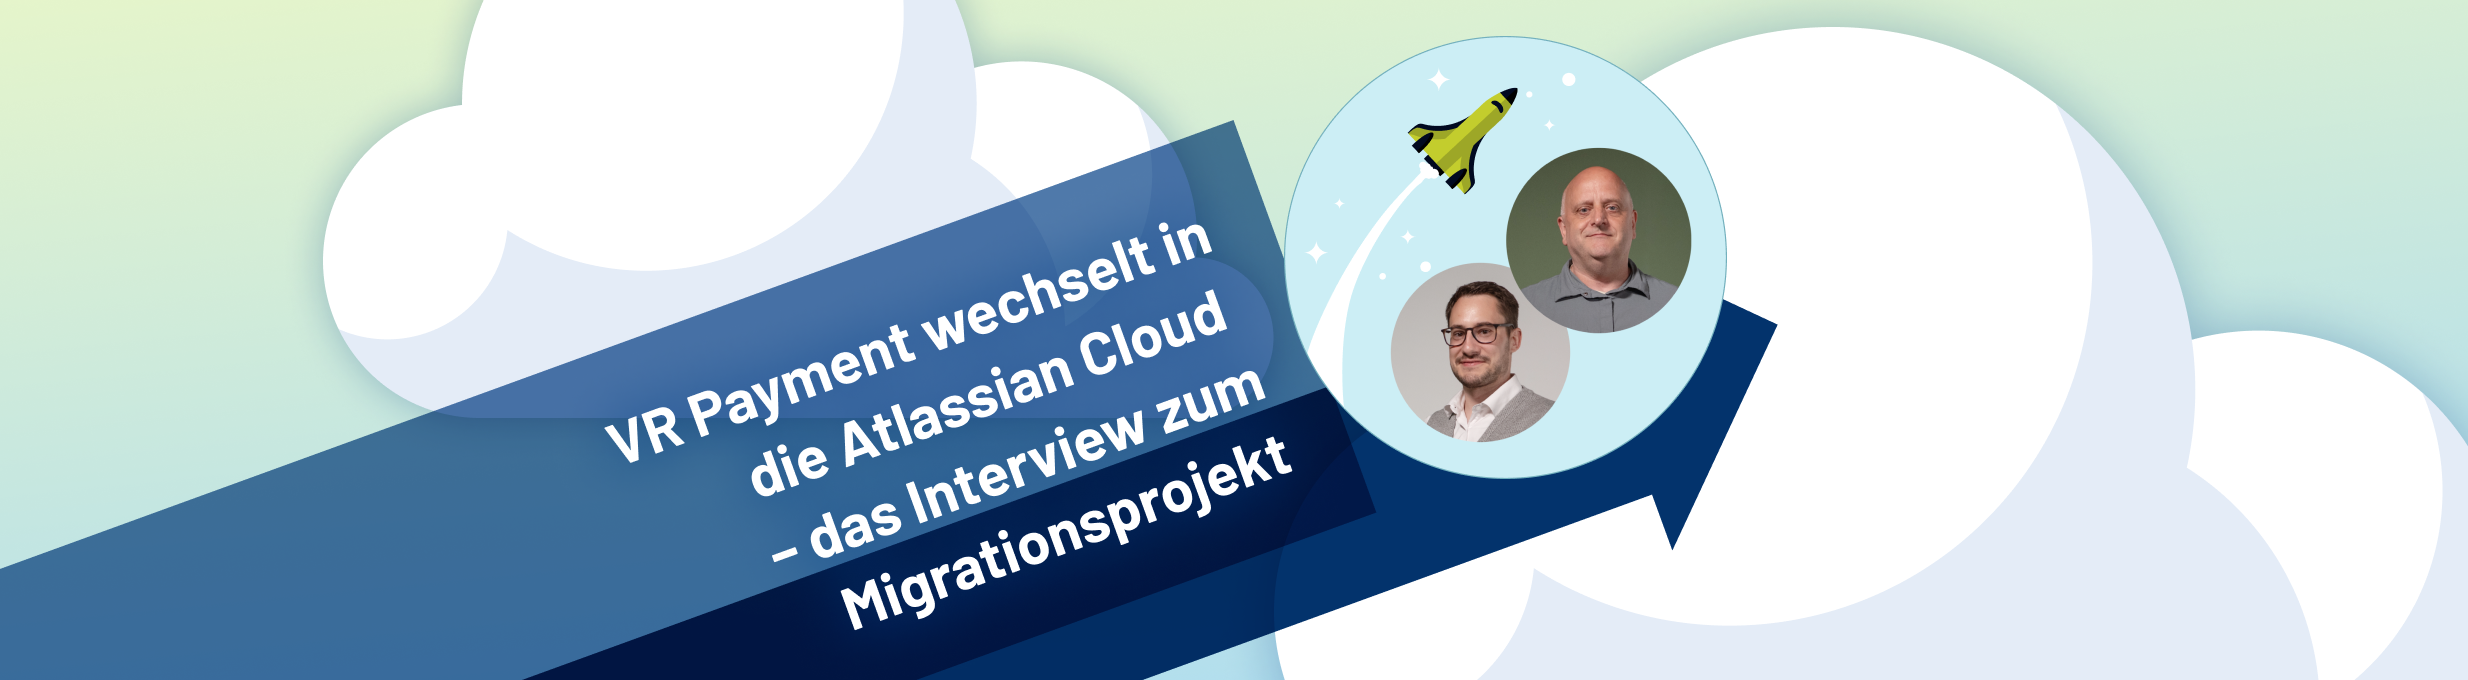 VR Payment im Interview über das Cloud-Migrationsprojekt